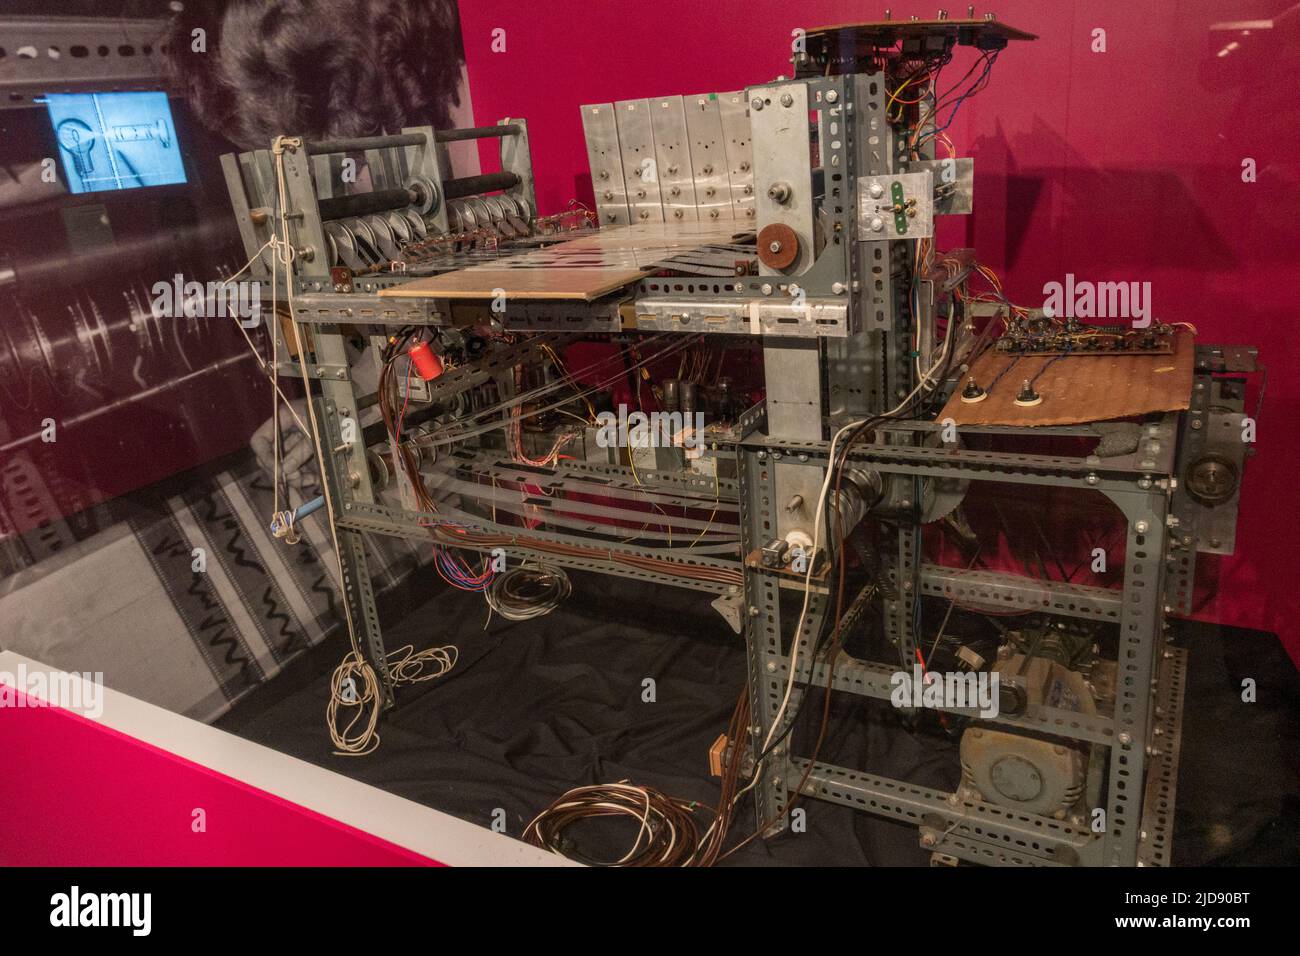 Un programmatore di macchine Oramics (c1966) di Daphne Oram esposto in un museo dei media. Foto Stock